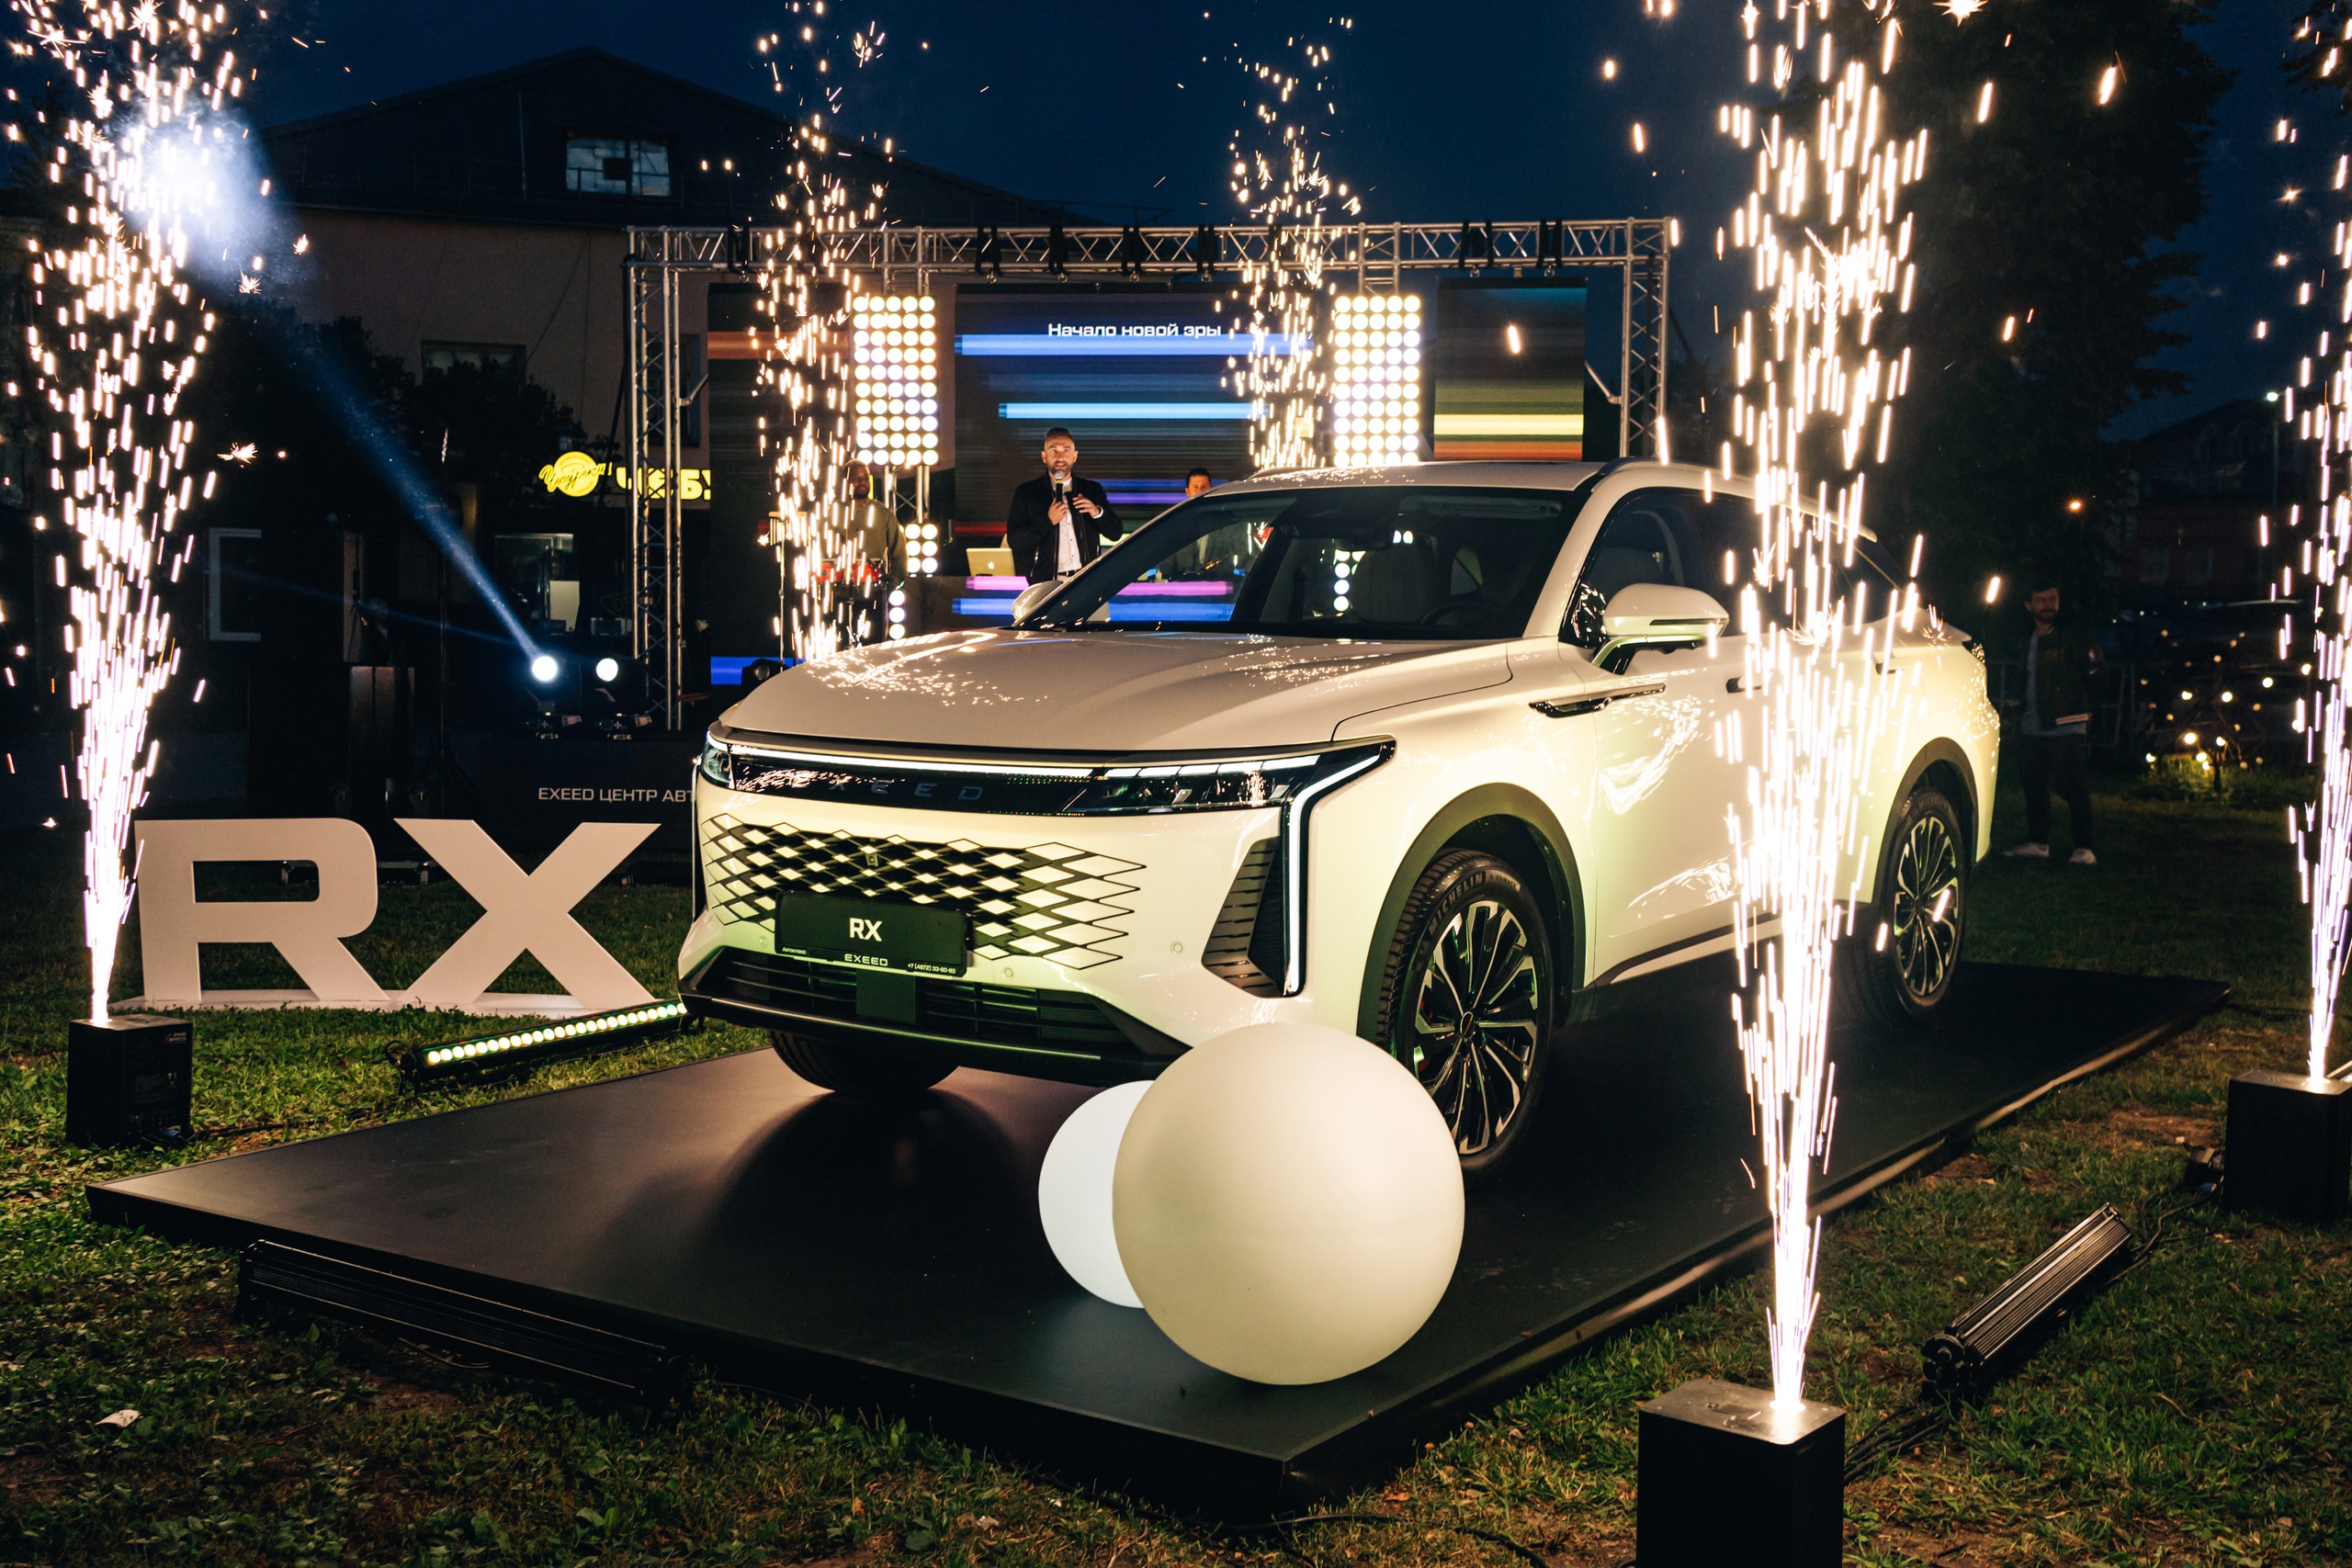 EXEED Центр Автокласс на Новомосковском презентовал новое поколение  EXEED RX  в концепции «Искусство технологий».